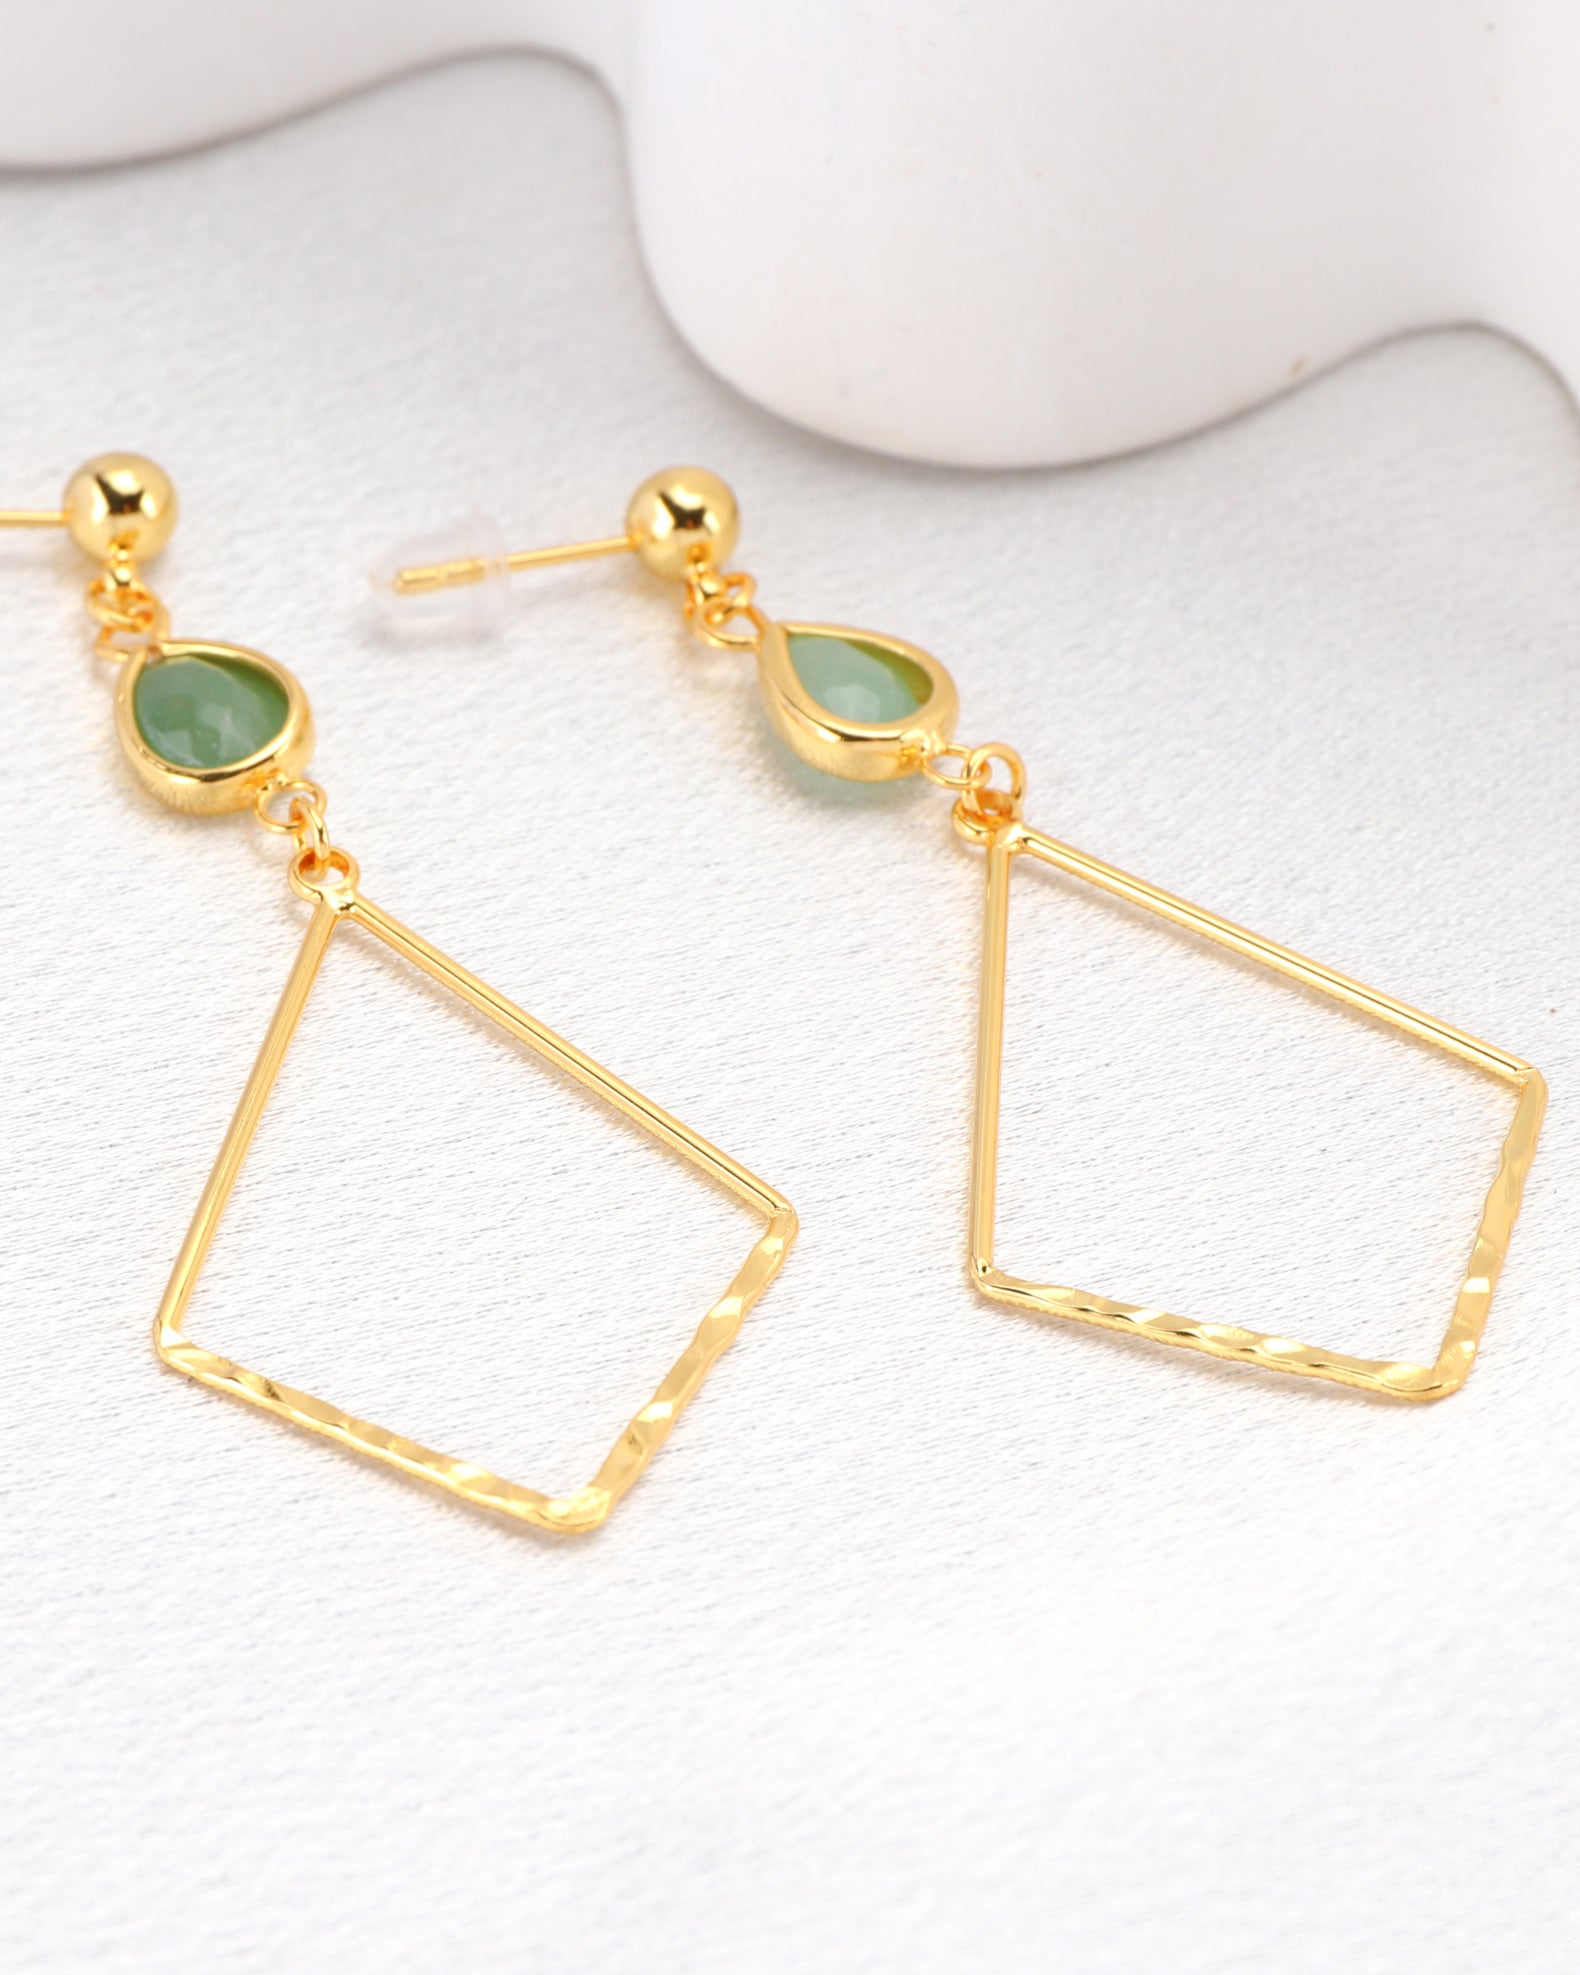 Zelena Green Crystal Gold Earrings